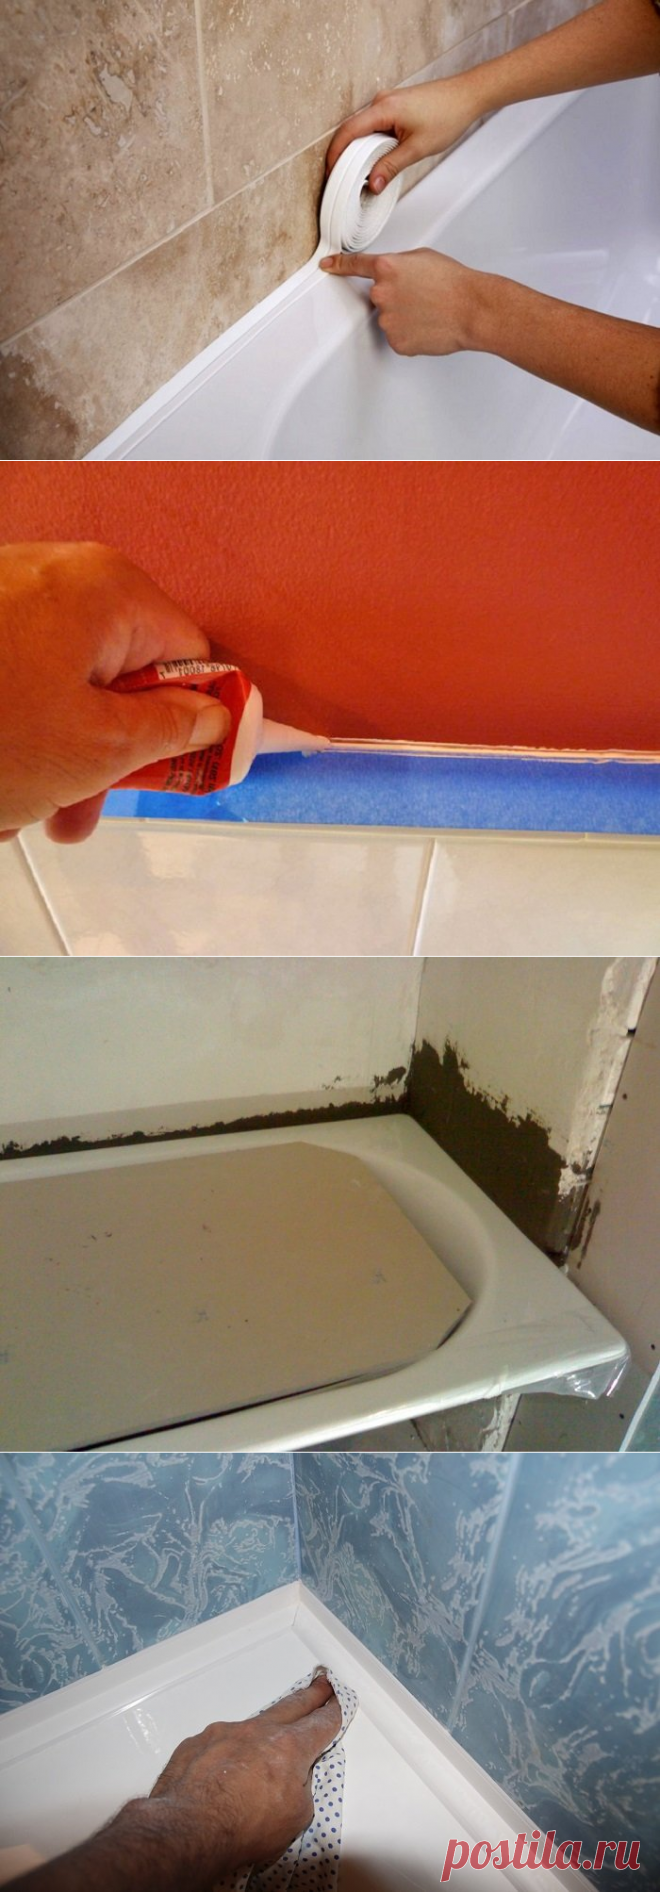 Как сделать между ванной и стеной